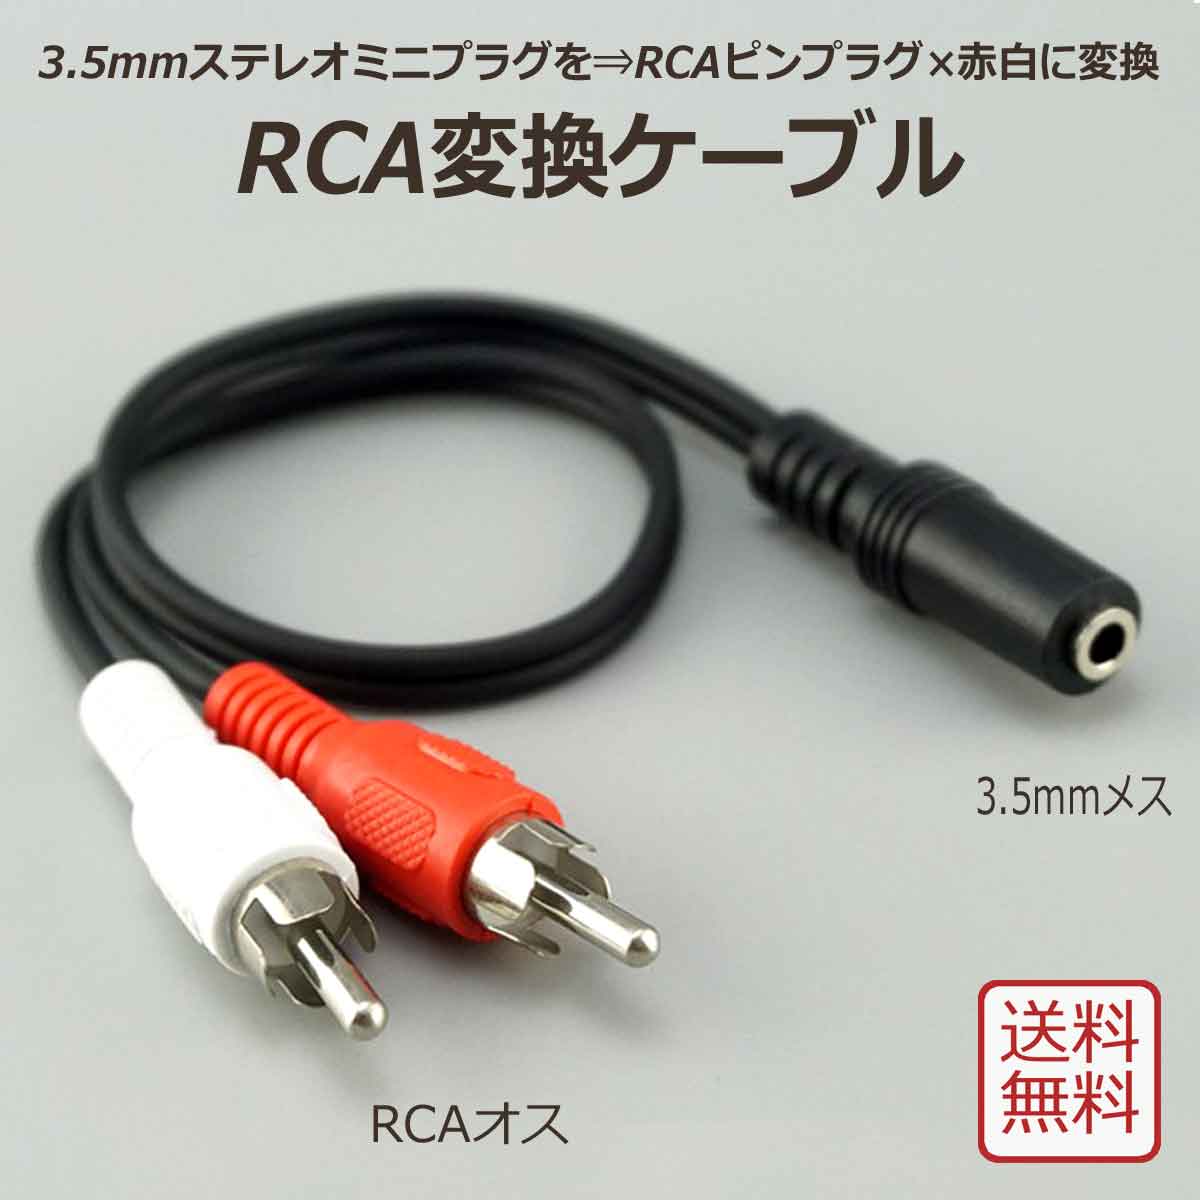 RCA 変換ケーブル 全長30cm ミニプラグ ⇒ RCAピンプラグ 変換 端子 種類 3.5mmステレオ3極ミニジャック(メス 凹) ⇔ オーディオ RCAピンプラグ(オス 凸) 赤白 : odocble-rca-35mess-30 : アリージェム - 通販 - Yahoo!ショッピング